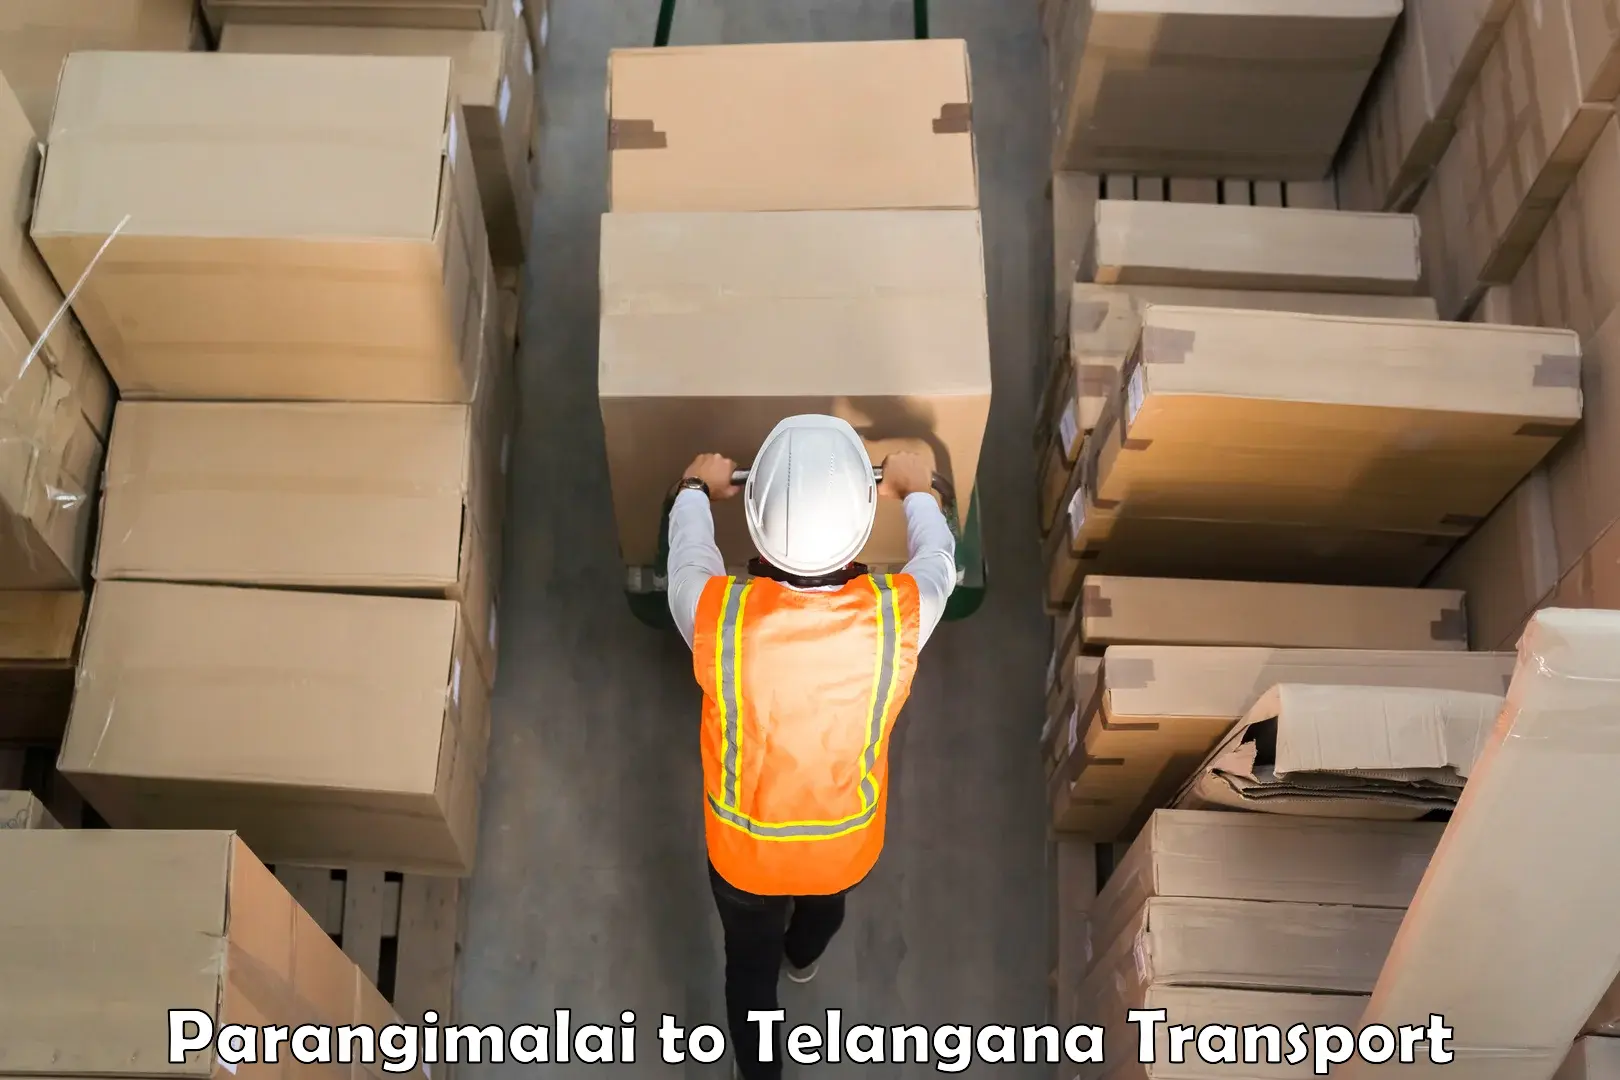 Container transport service Parangimalai to Makthal